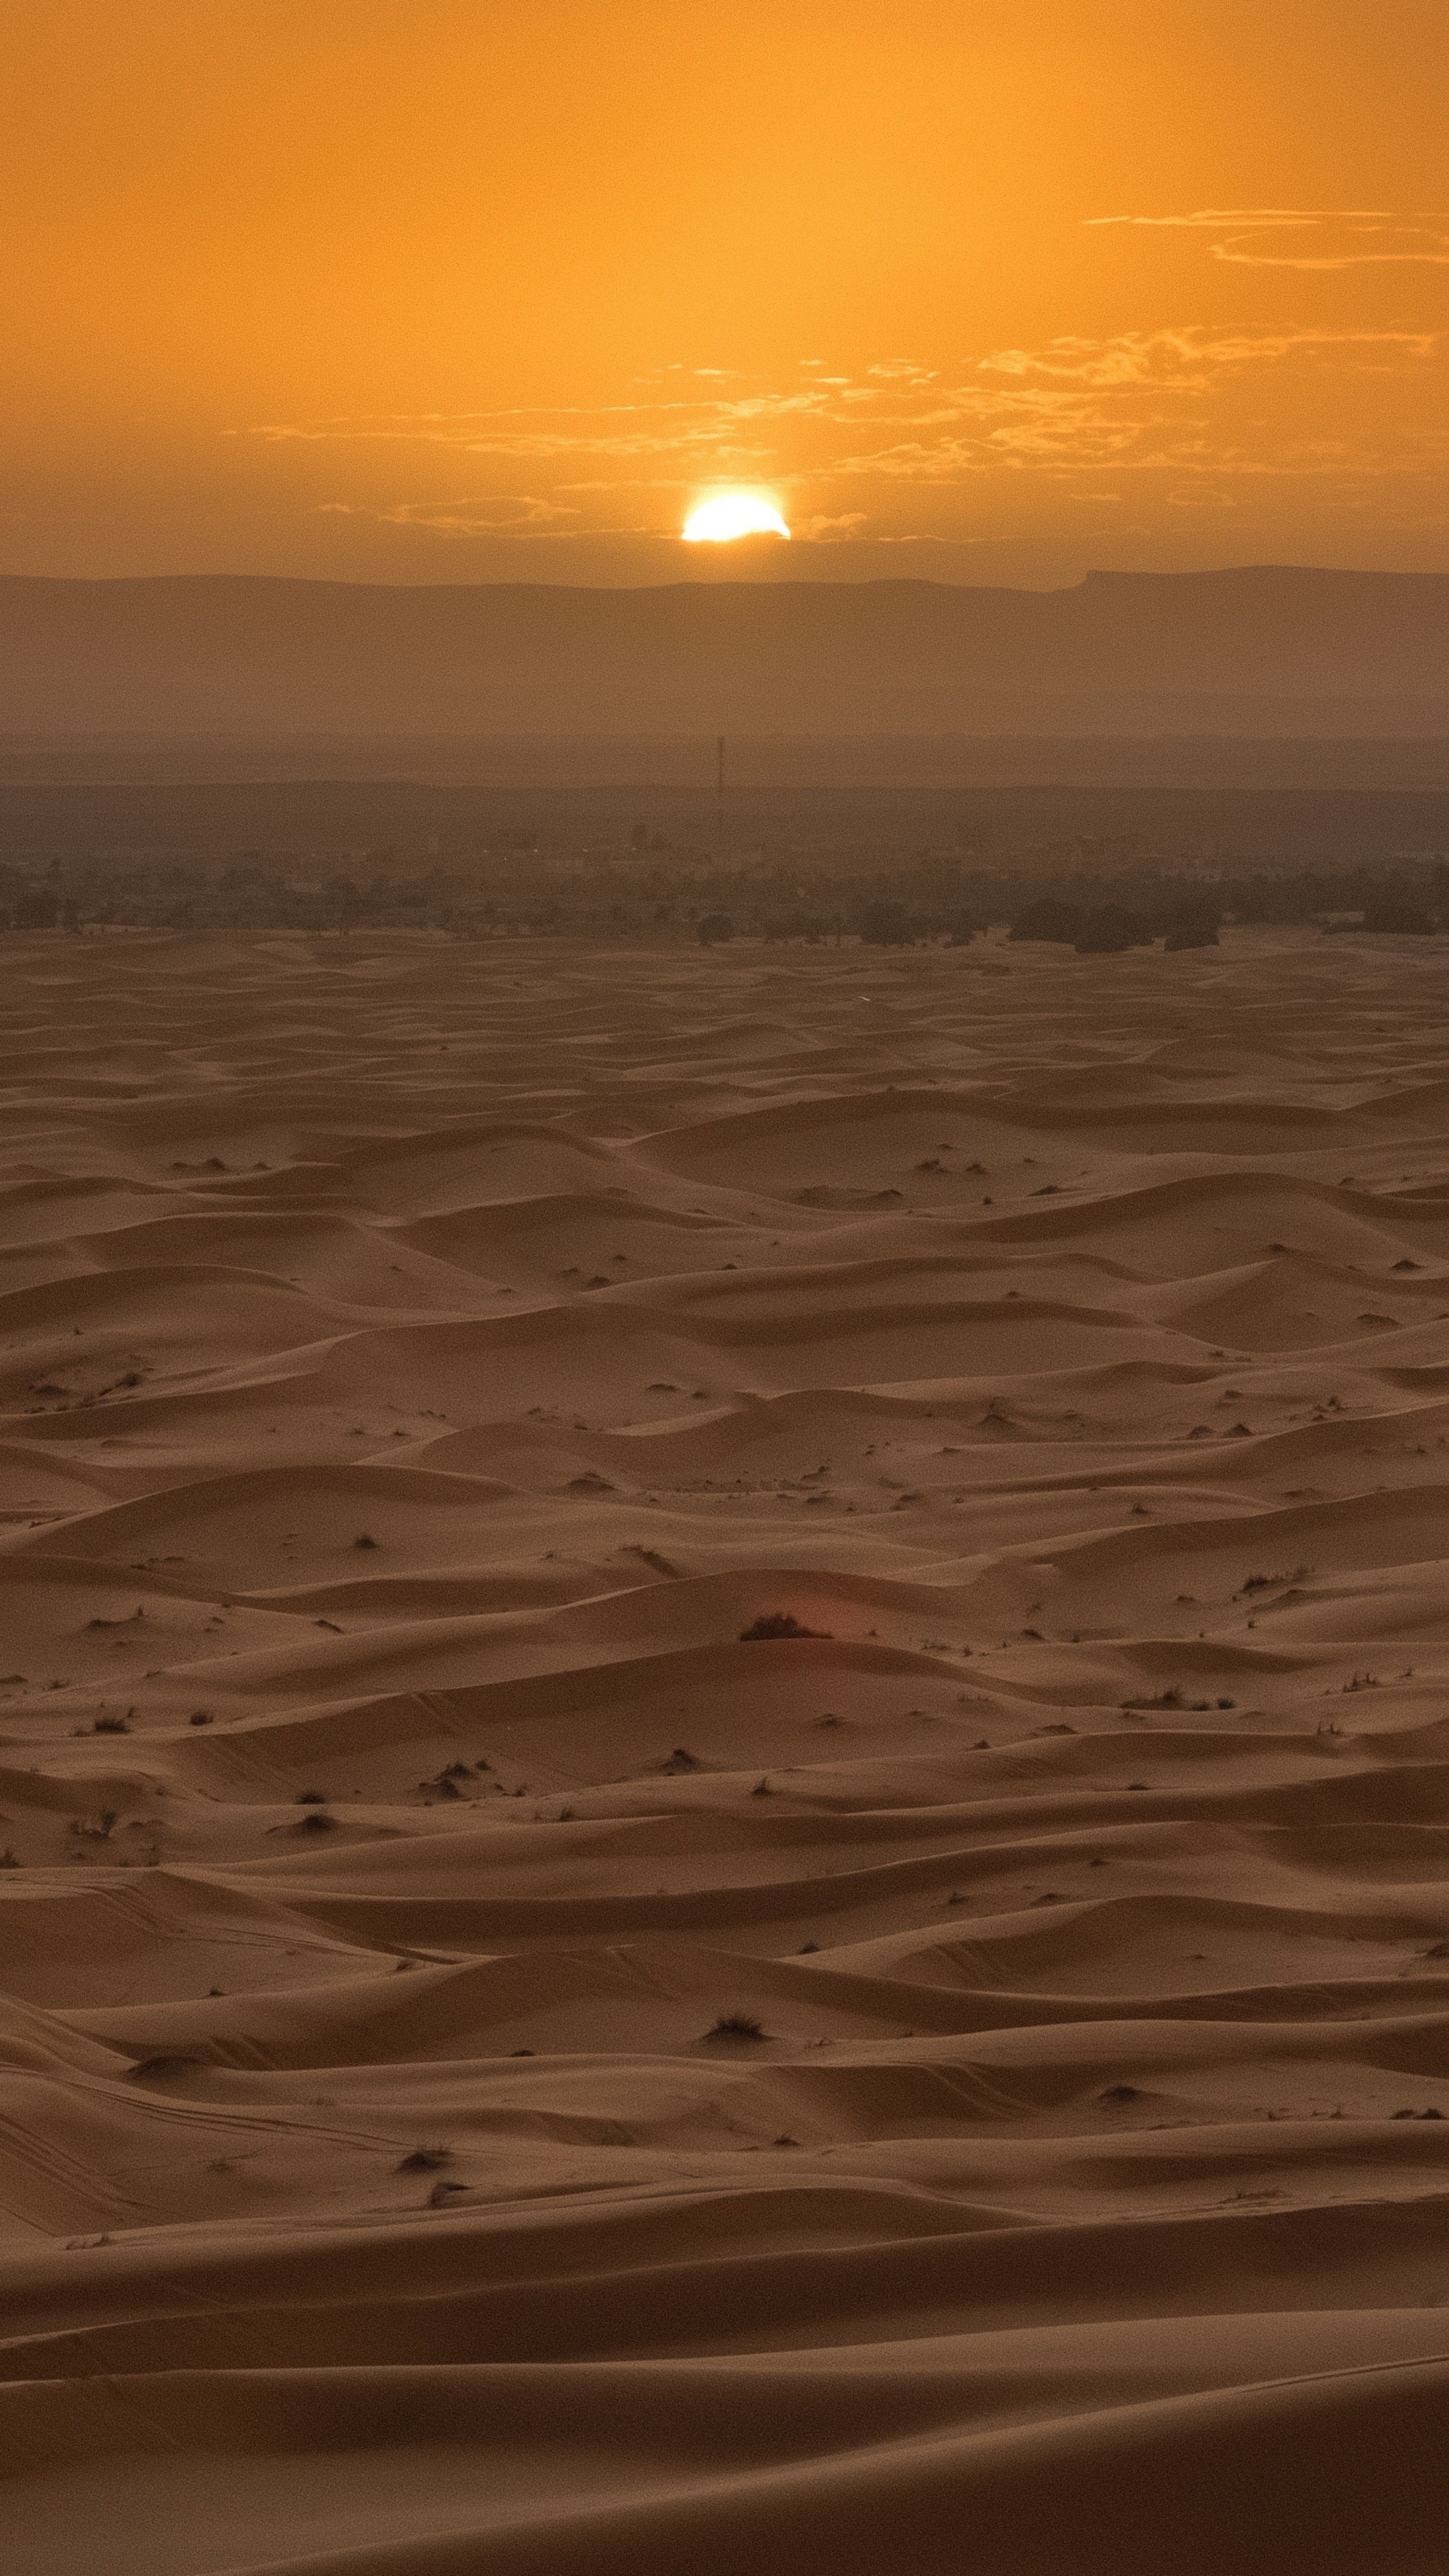 Gobi Desert, Desert sunset, Awe-inspiring beauty, Tranquility, 2160x3840 4K Phone